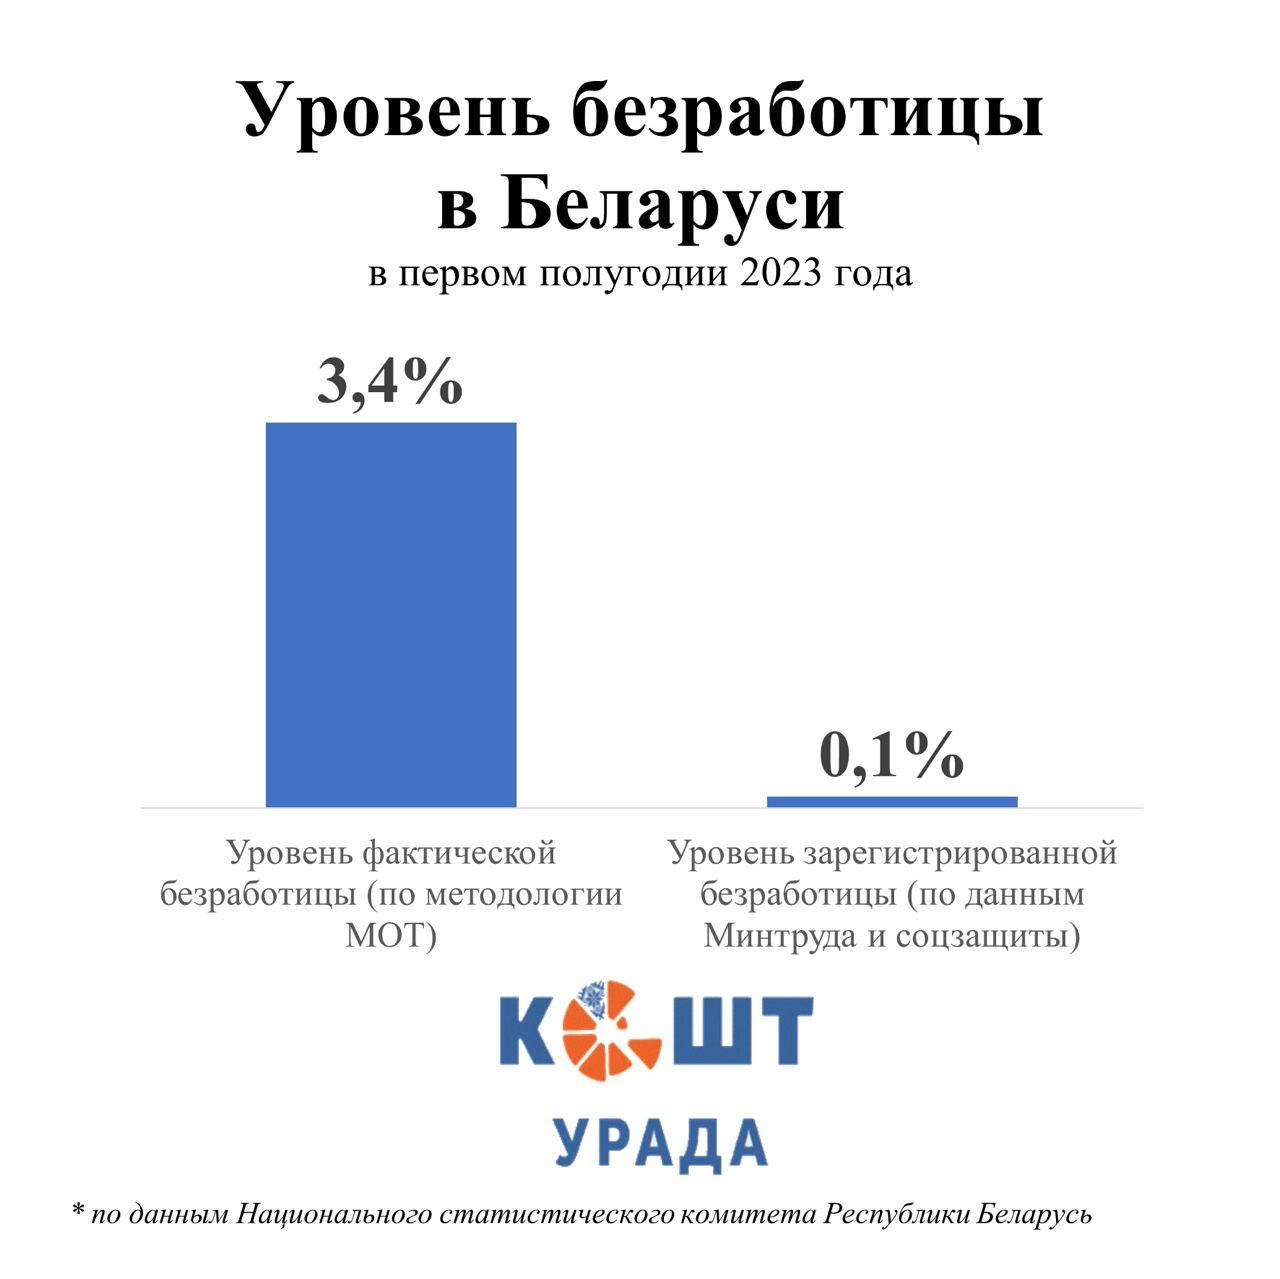 Как в Беларуси «правильно» считают безработицу